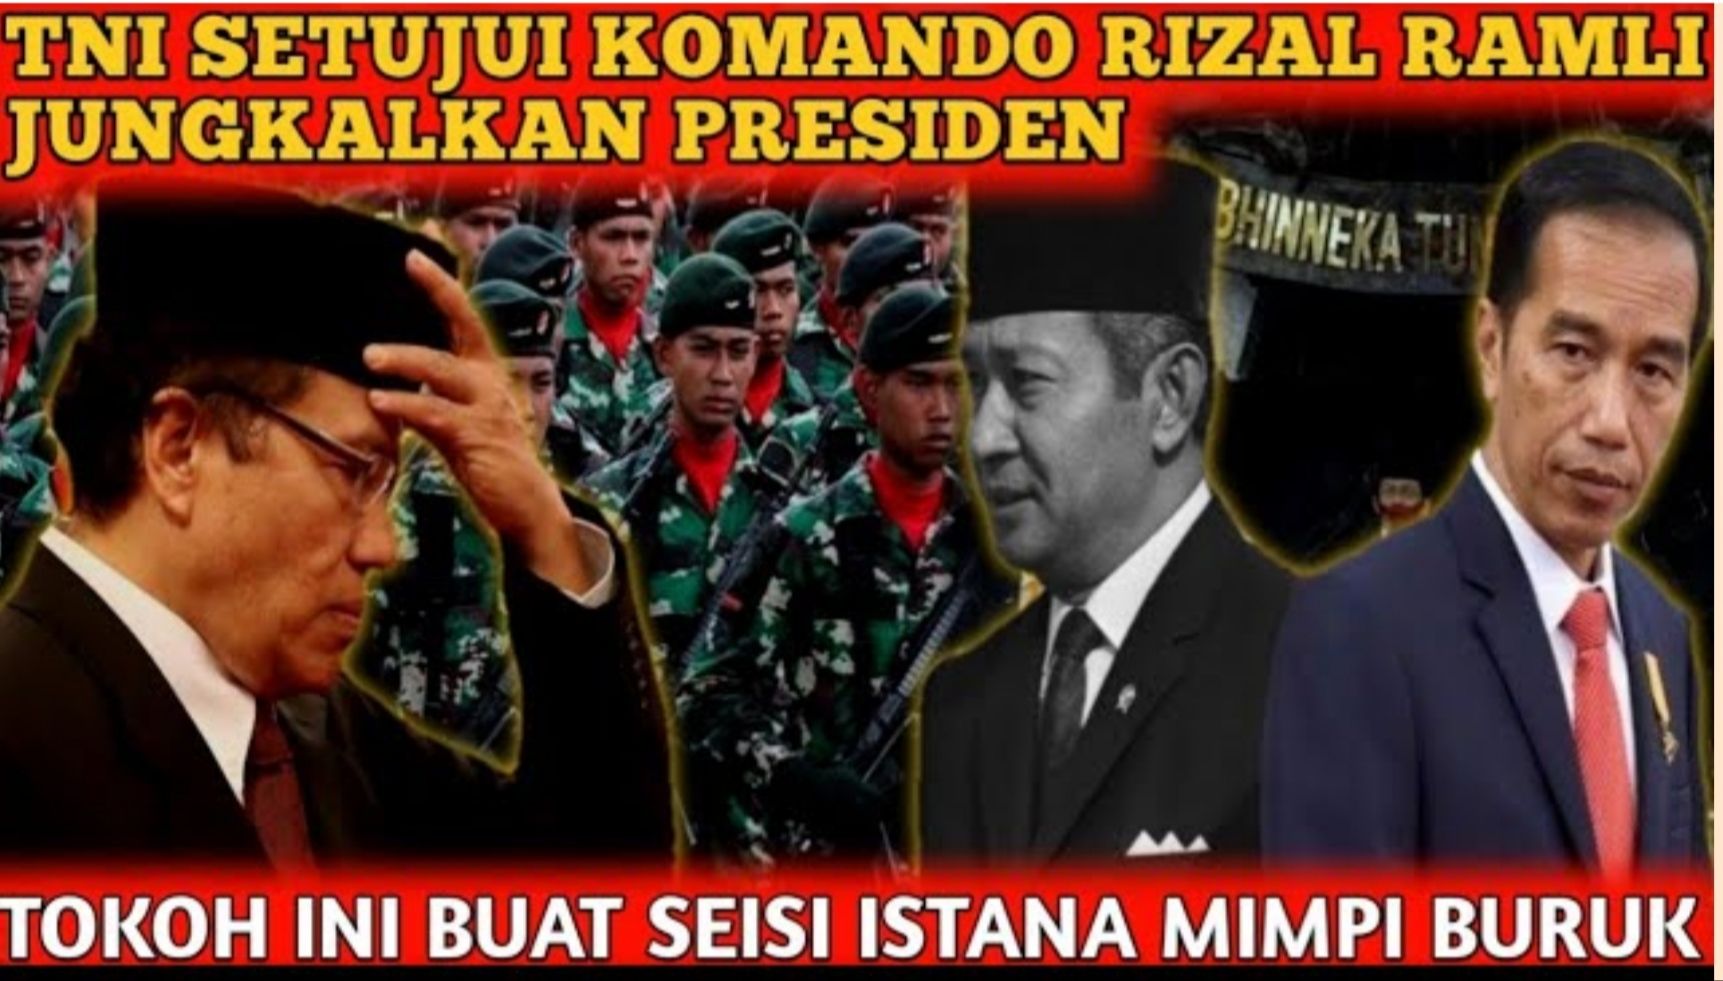 Thumbnail video yang mengisukan TNI siap menjungkalkan Presiden Jokowi dari jabatannya usai menyetujui komando Rizal Ramli. 